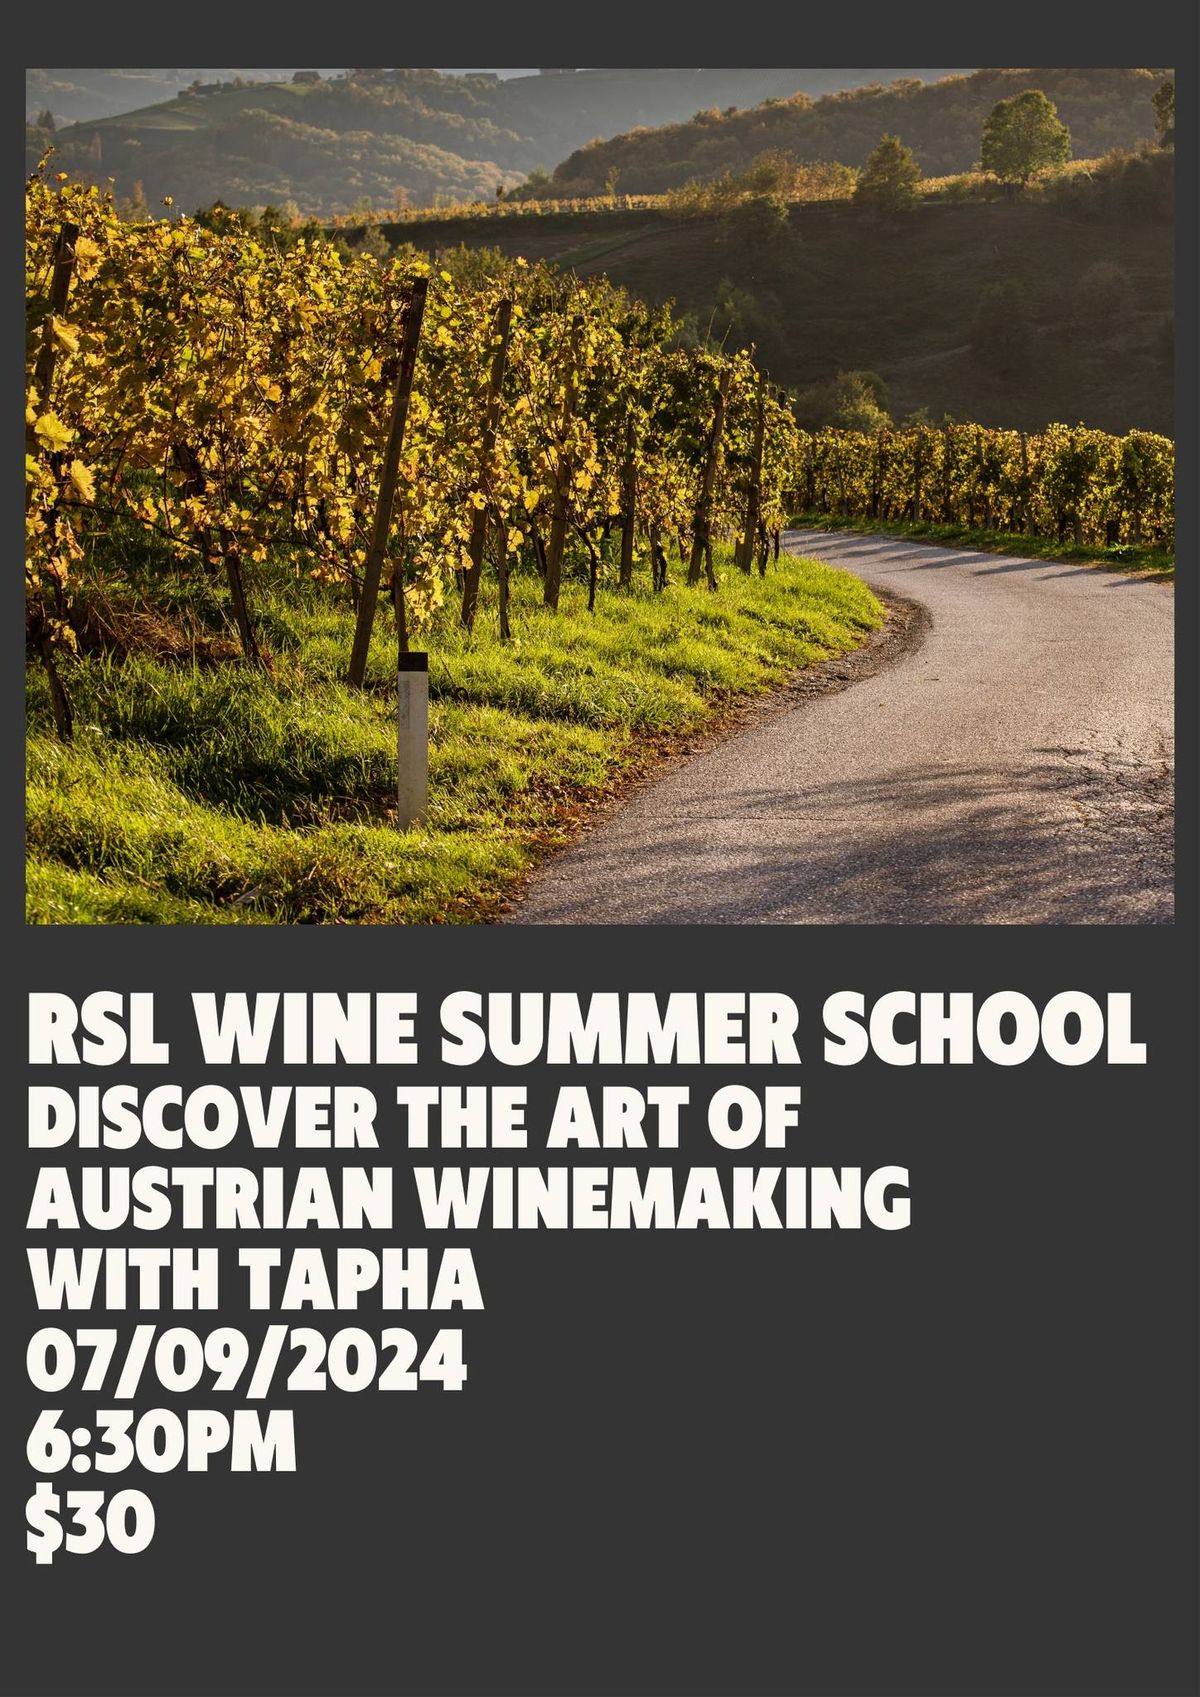 Austrian Wine Summer School at RSL $30